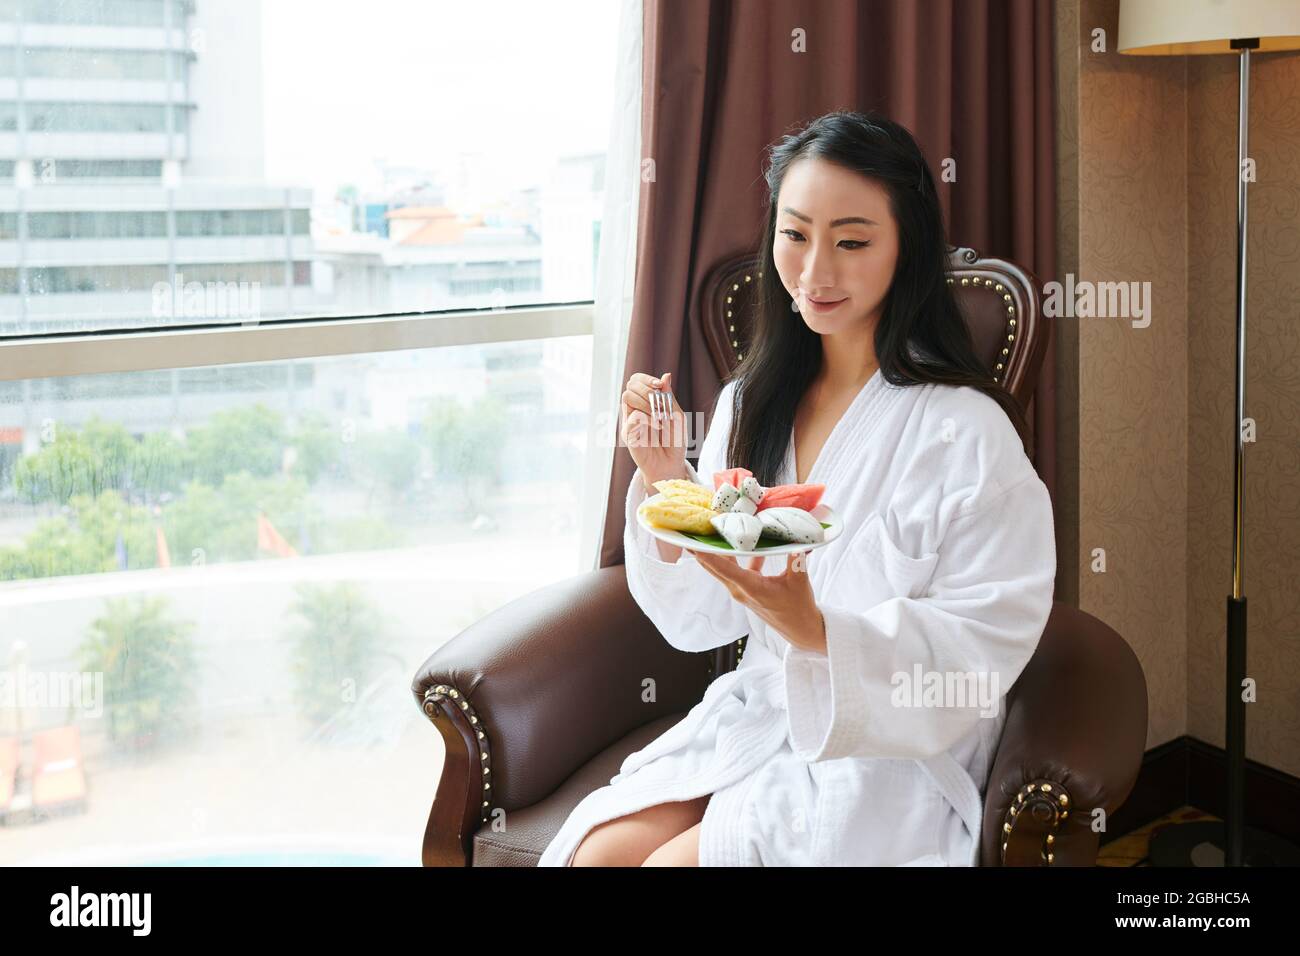 Attraktive junge asiatische Frau im weißen Hotelbademantel, die in einem Sessel am Fenster sitzt und tropische Früchte isst Stockfoto